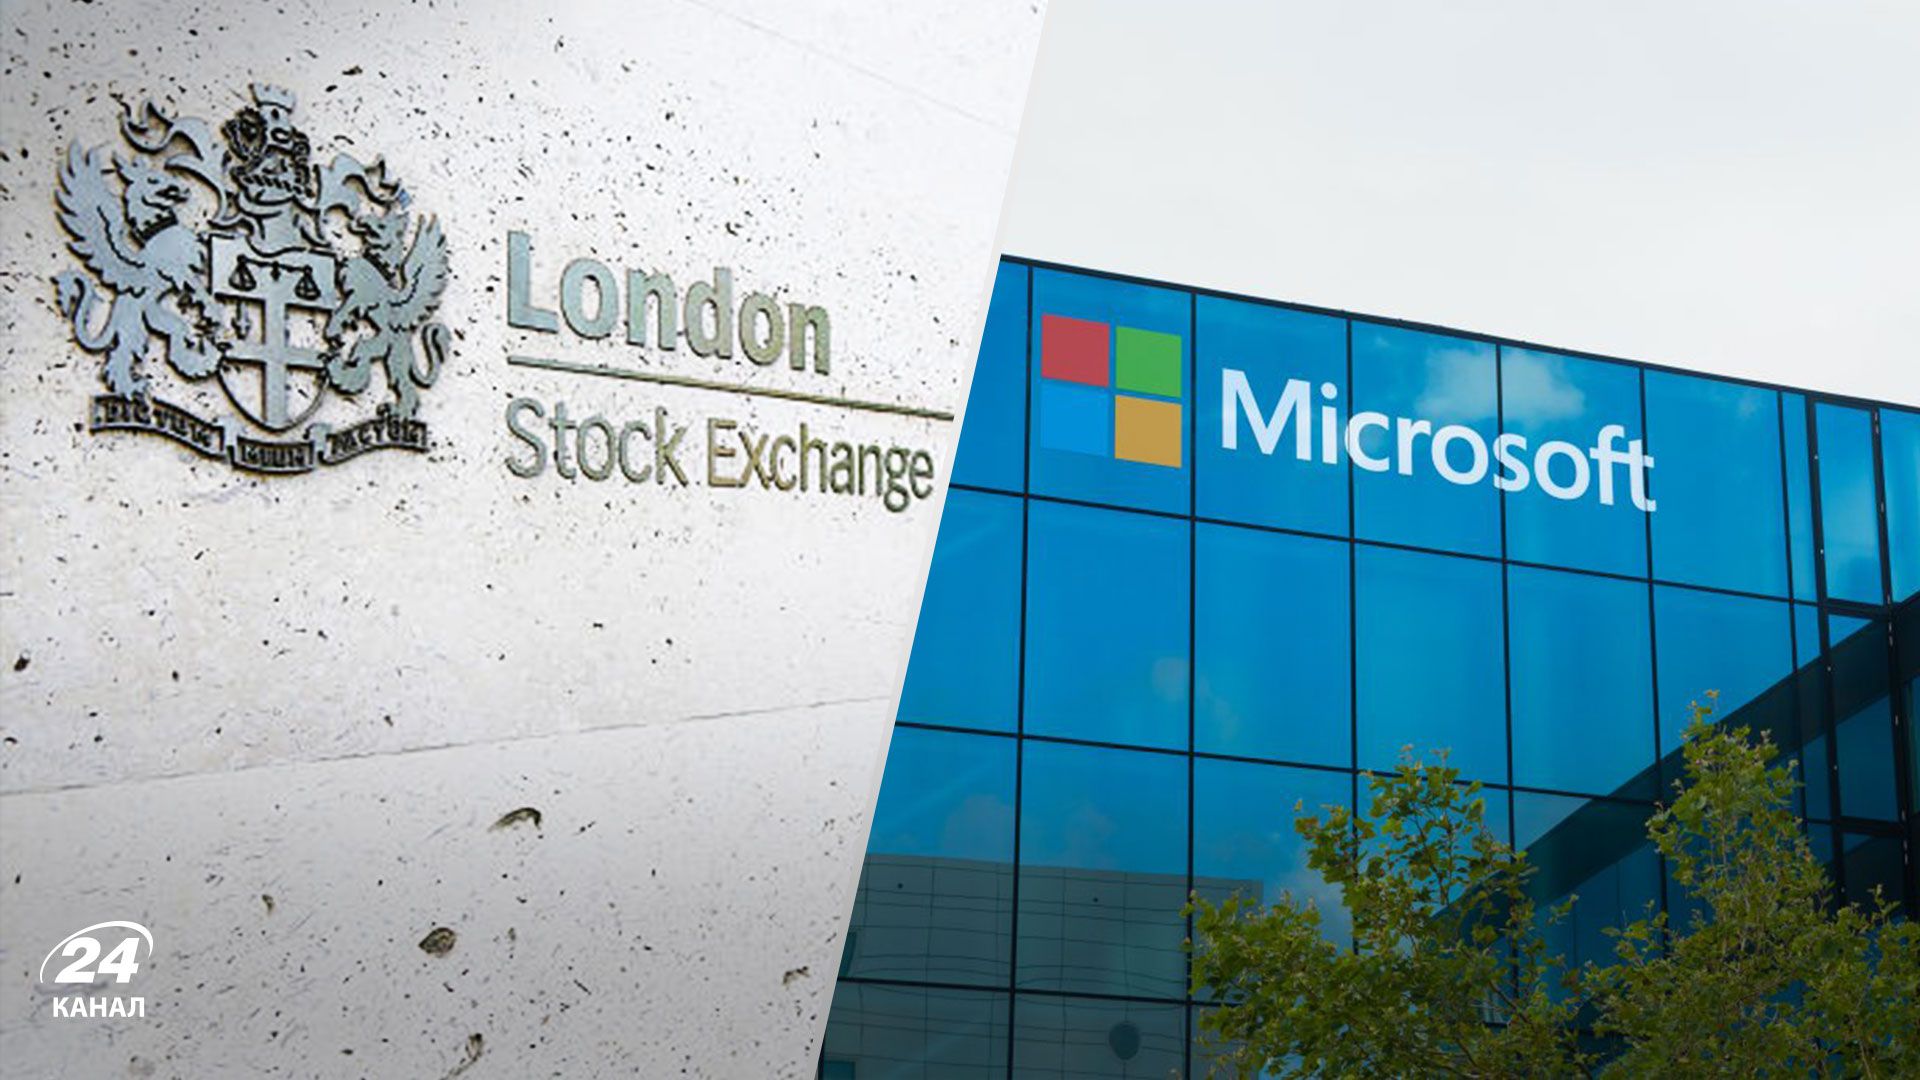 Лондонская фондовая биржа и Microsoft стали партнерами